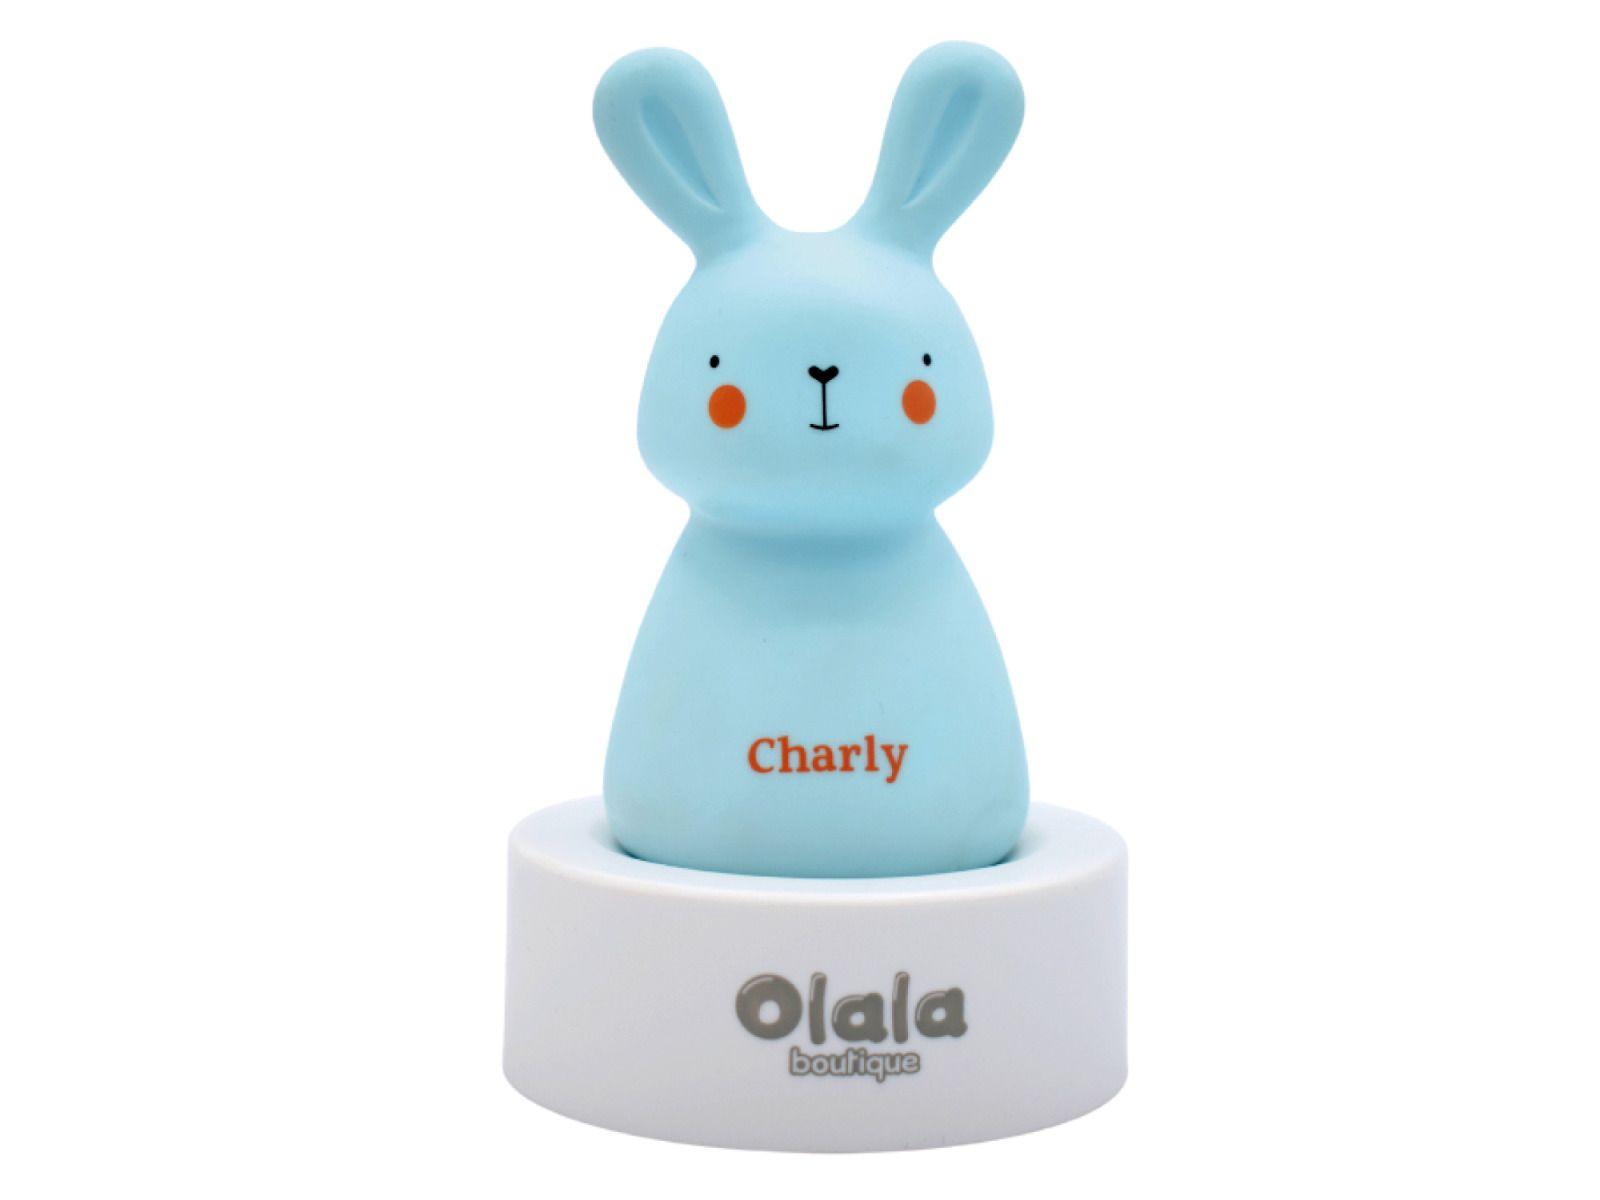 LED bedside lamp Olala - Charly Bunny, blue